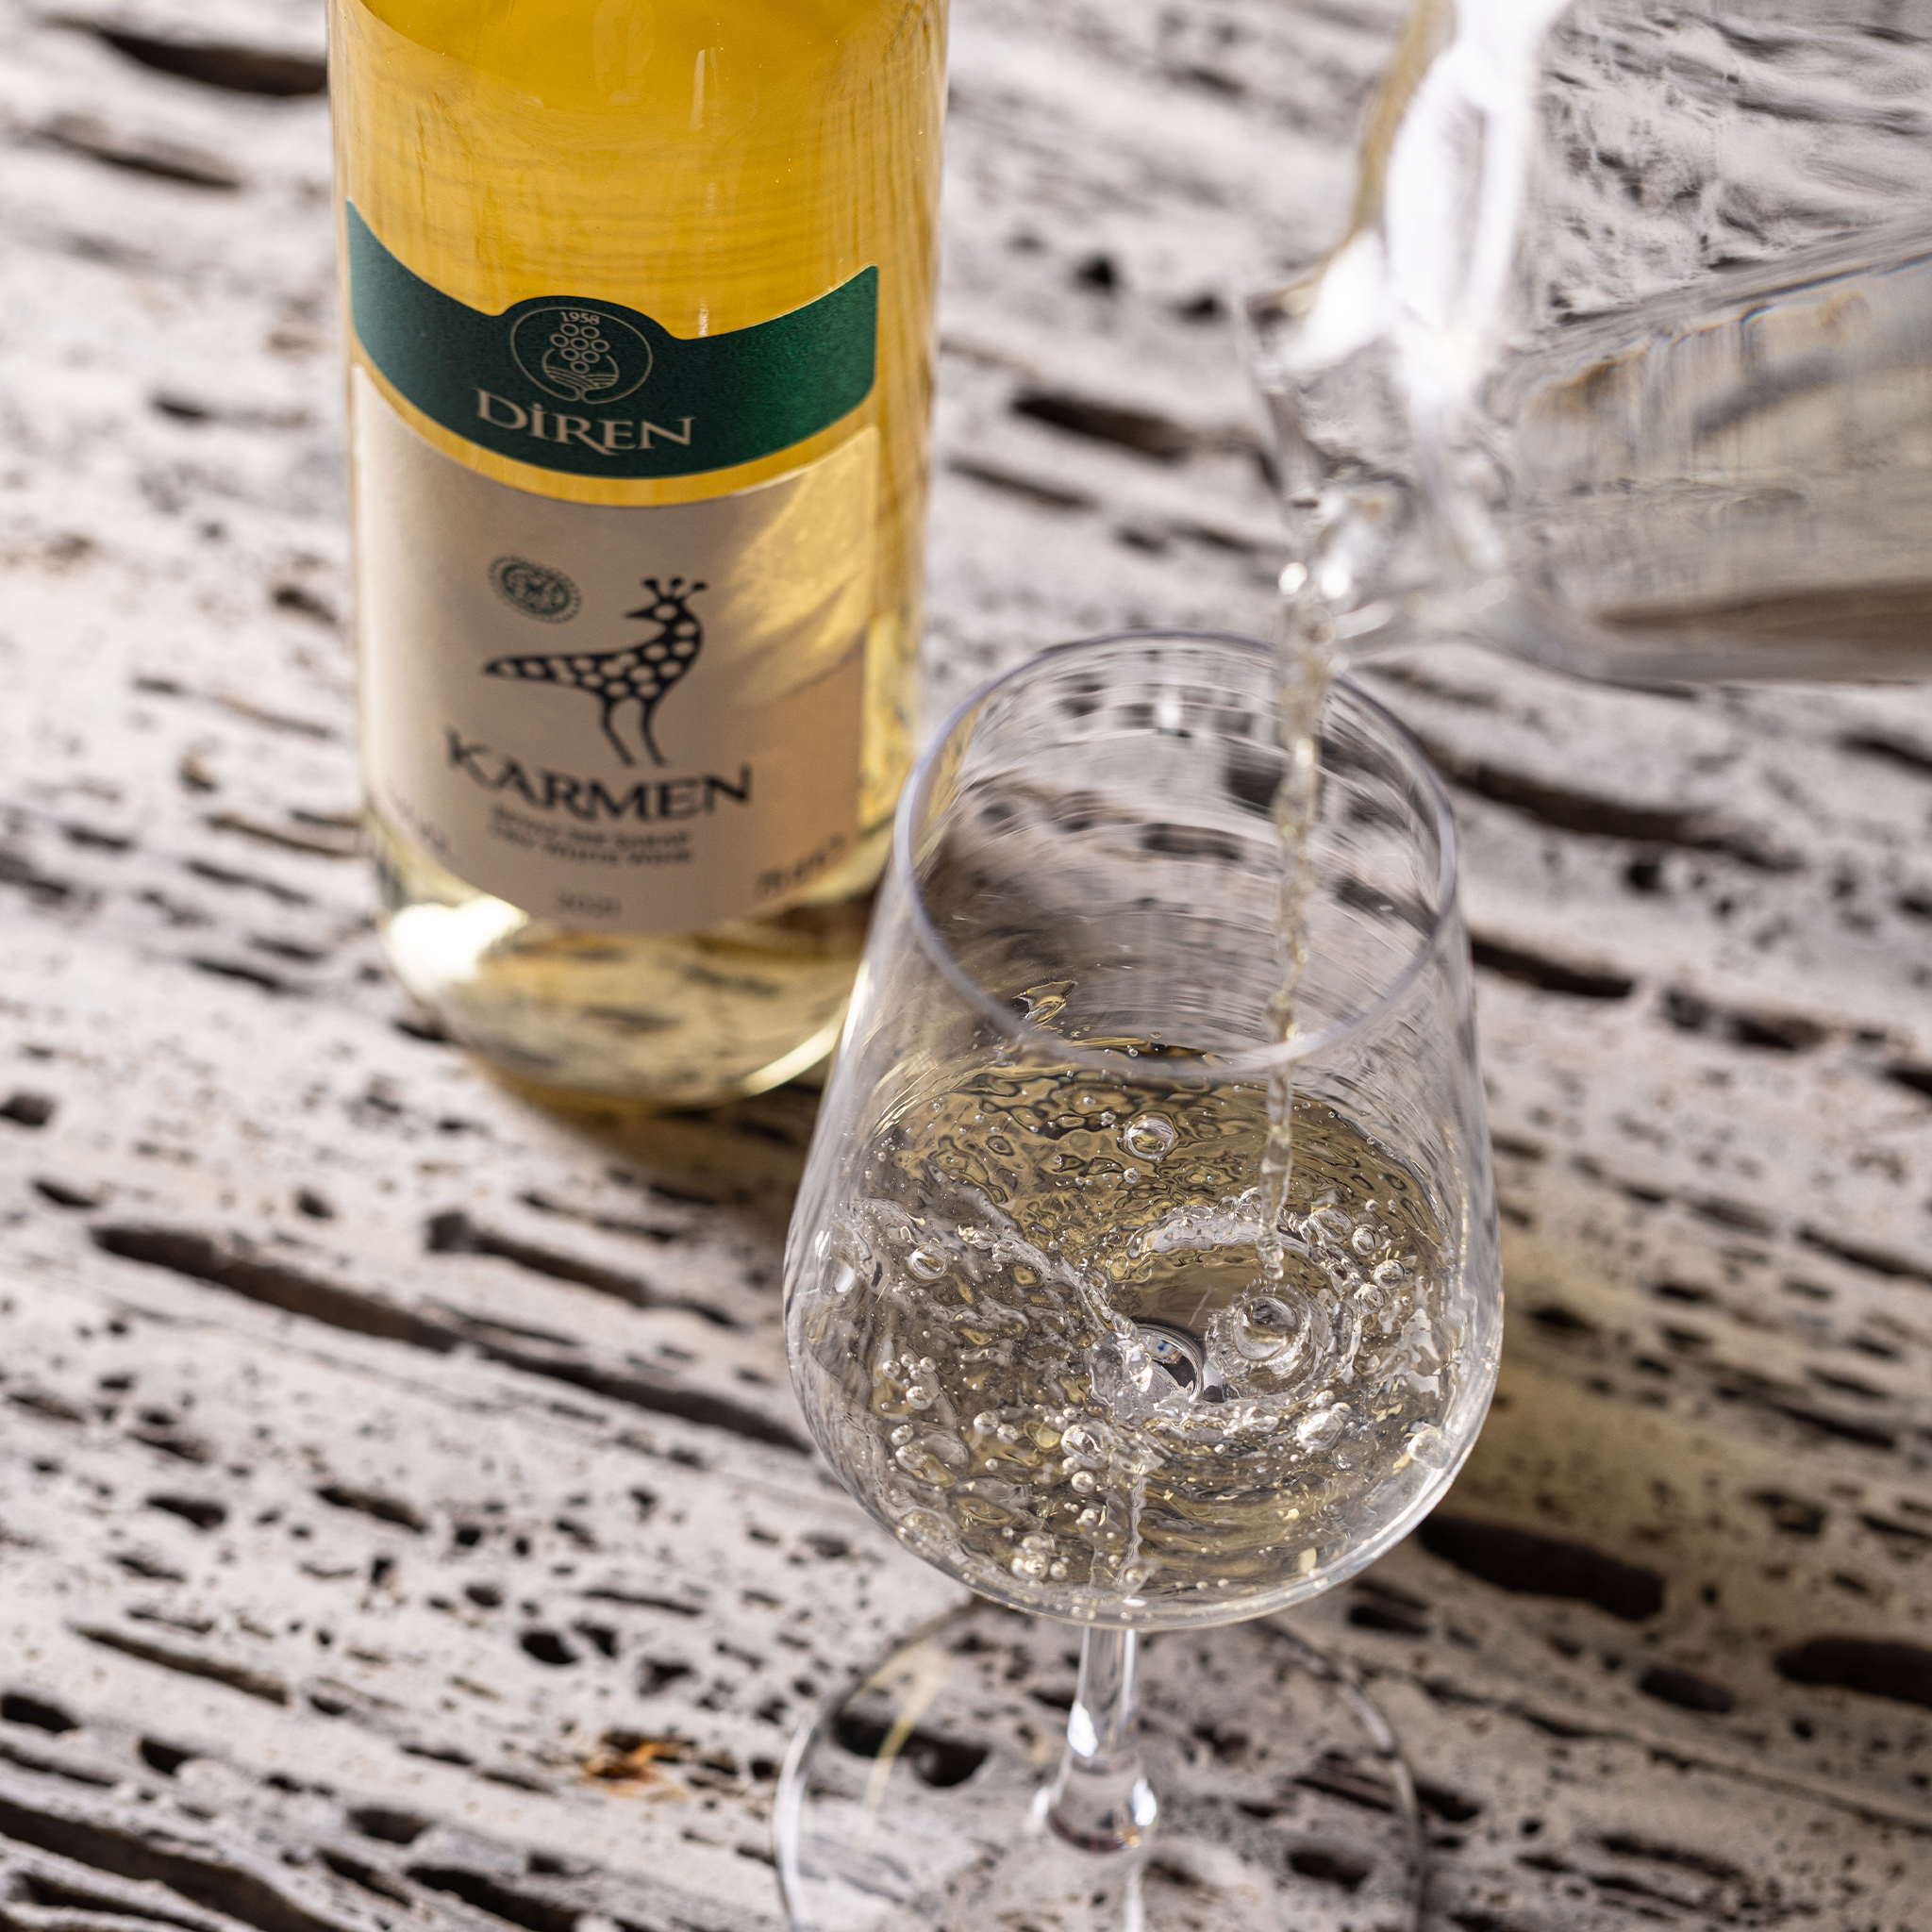 ディレン カルメン・ホワイト 750ml 辛口 トルコ 白ワイン | Diren Karmen Beyaz Sek Sarap | Dry White Wine